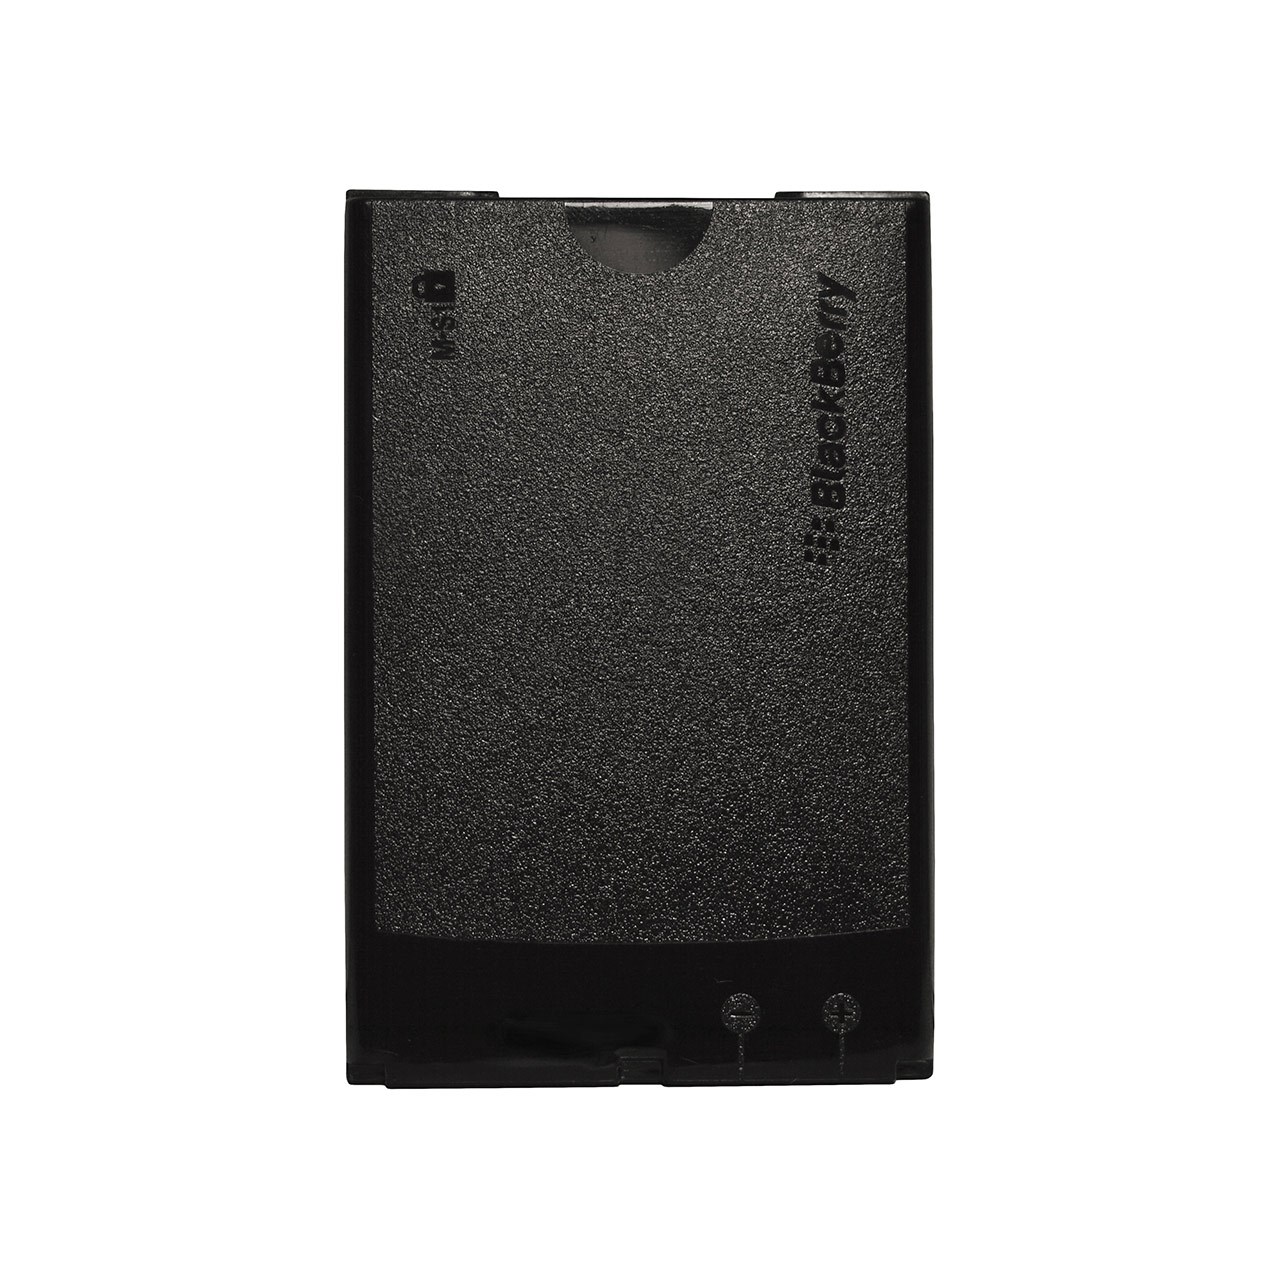 باتری موبایل مدل M-S1 با ظرفیت 1500mAh مناسب برای گوشی های موبایل بلک بری Bold 9000-9700-9780